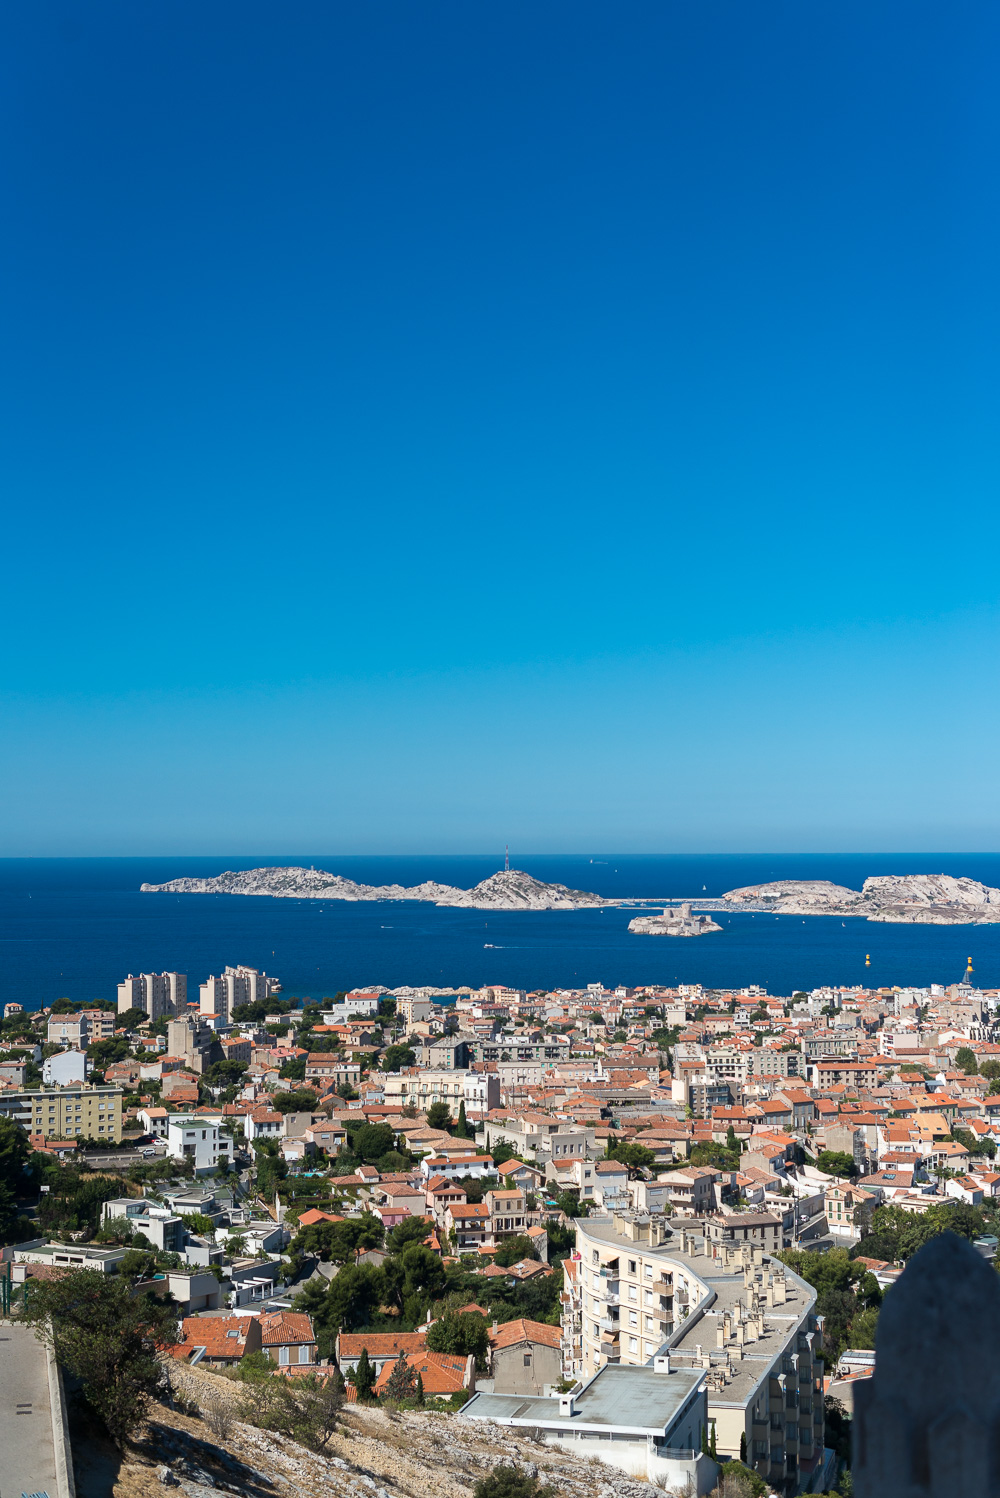 Reiseziele für deinen Urlaub in Südfrankreich-Ferien in Südfrankreich-Marseille-Reiseblog-andysparkles